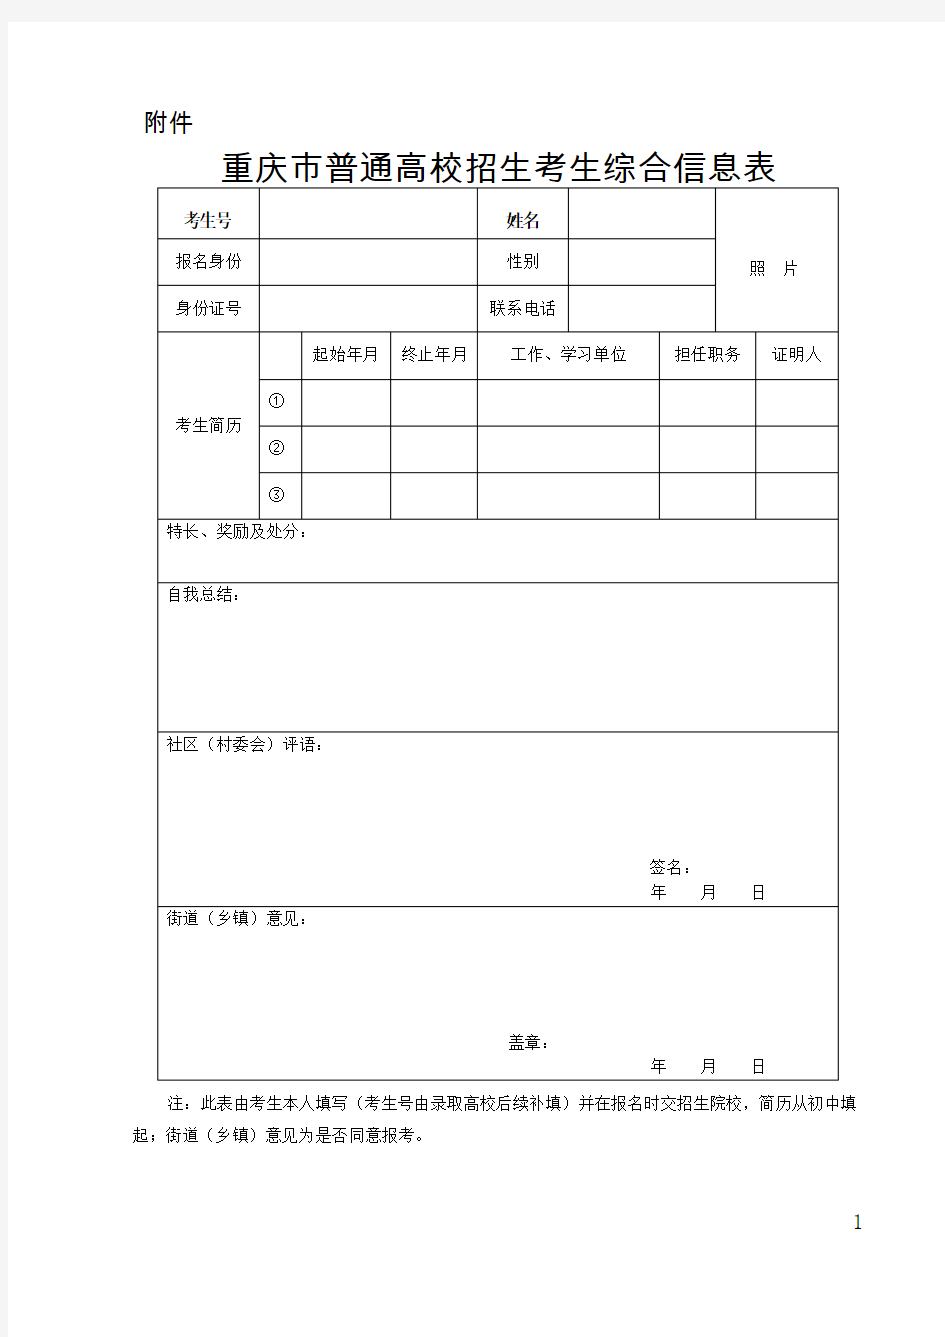 重庆市普通高校招生考生综合信息表(1)